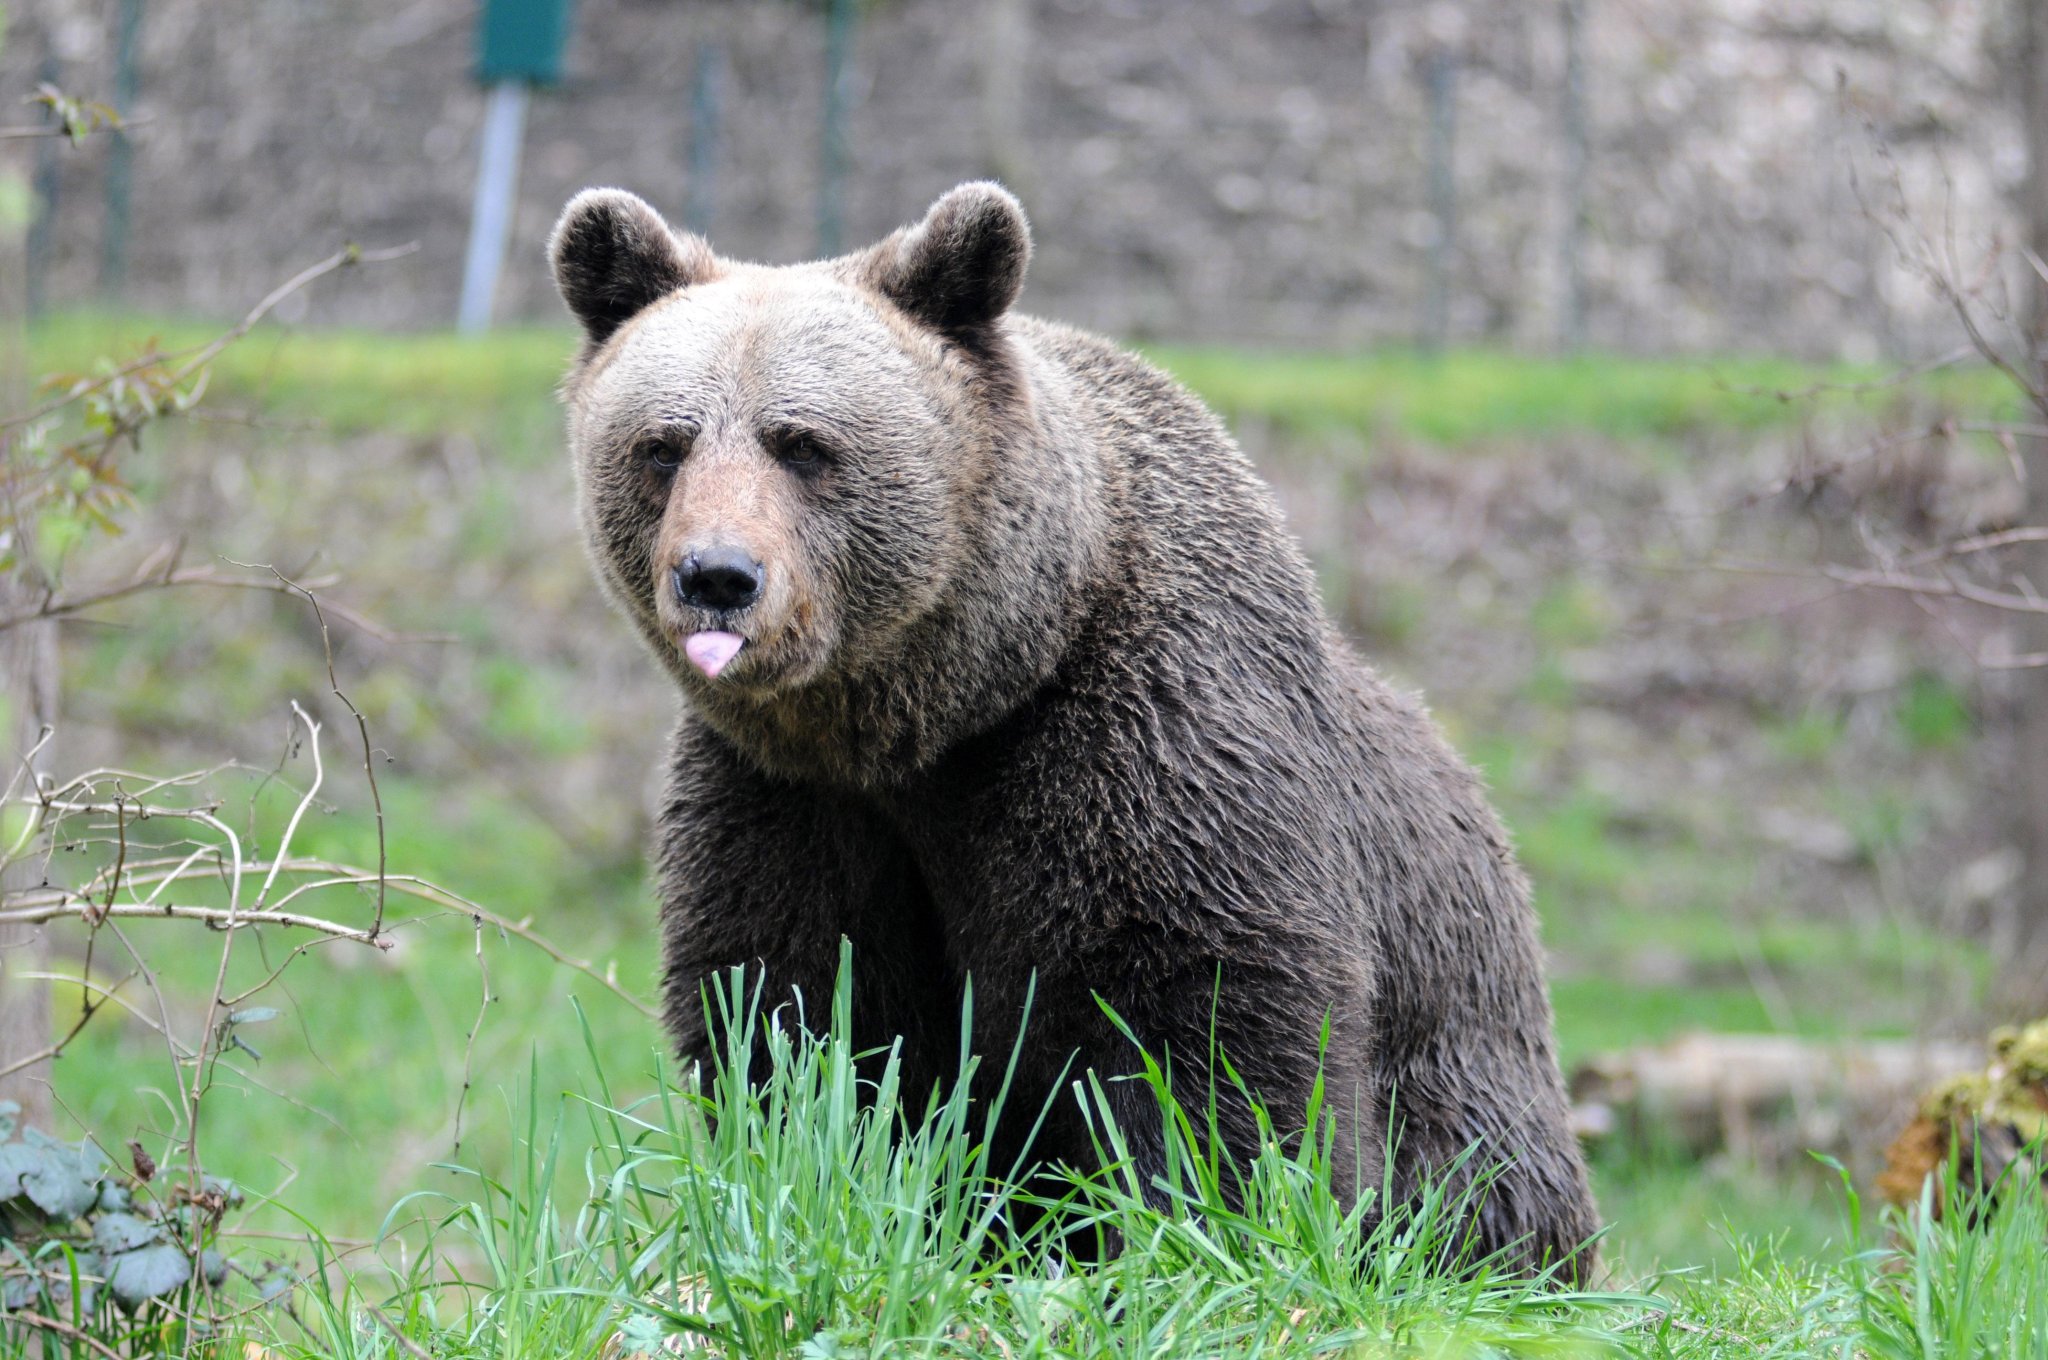 Runner morto a Trento, Pichetto: "Sopprimere orsa Jj4 non può essere una vendetta"